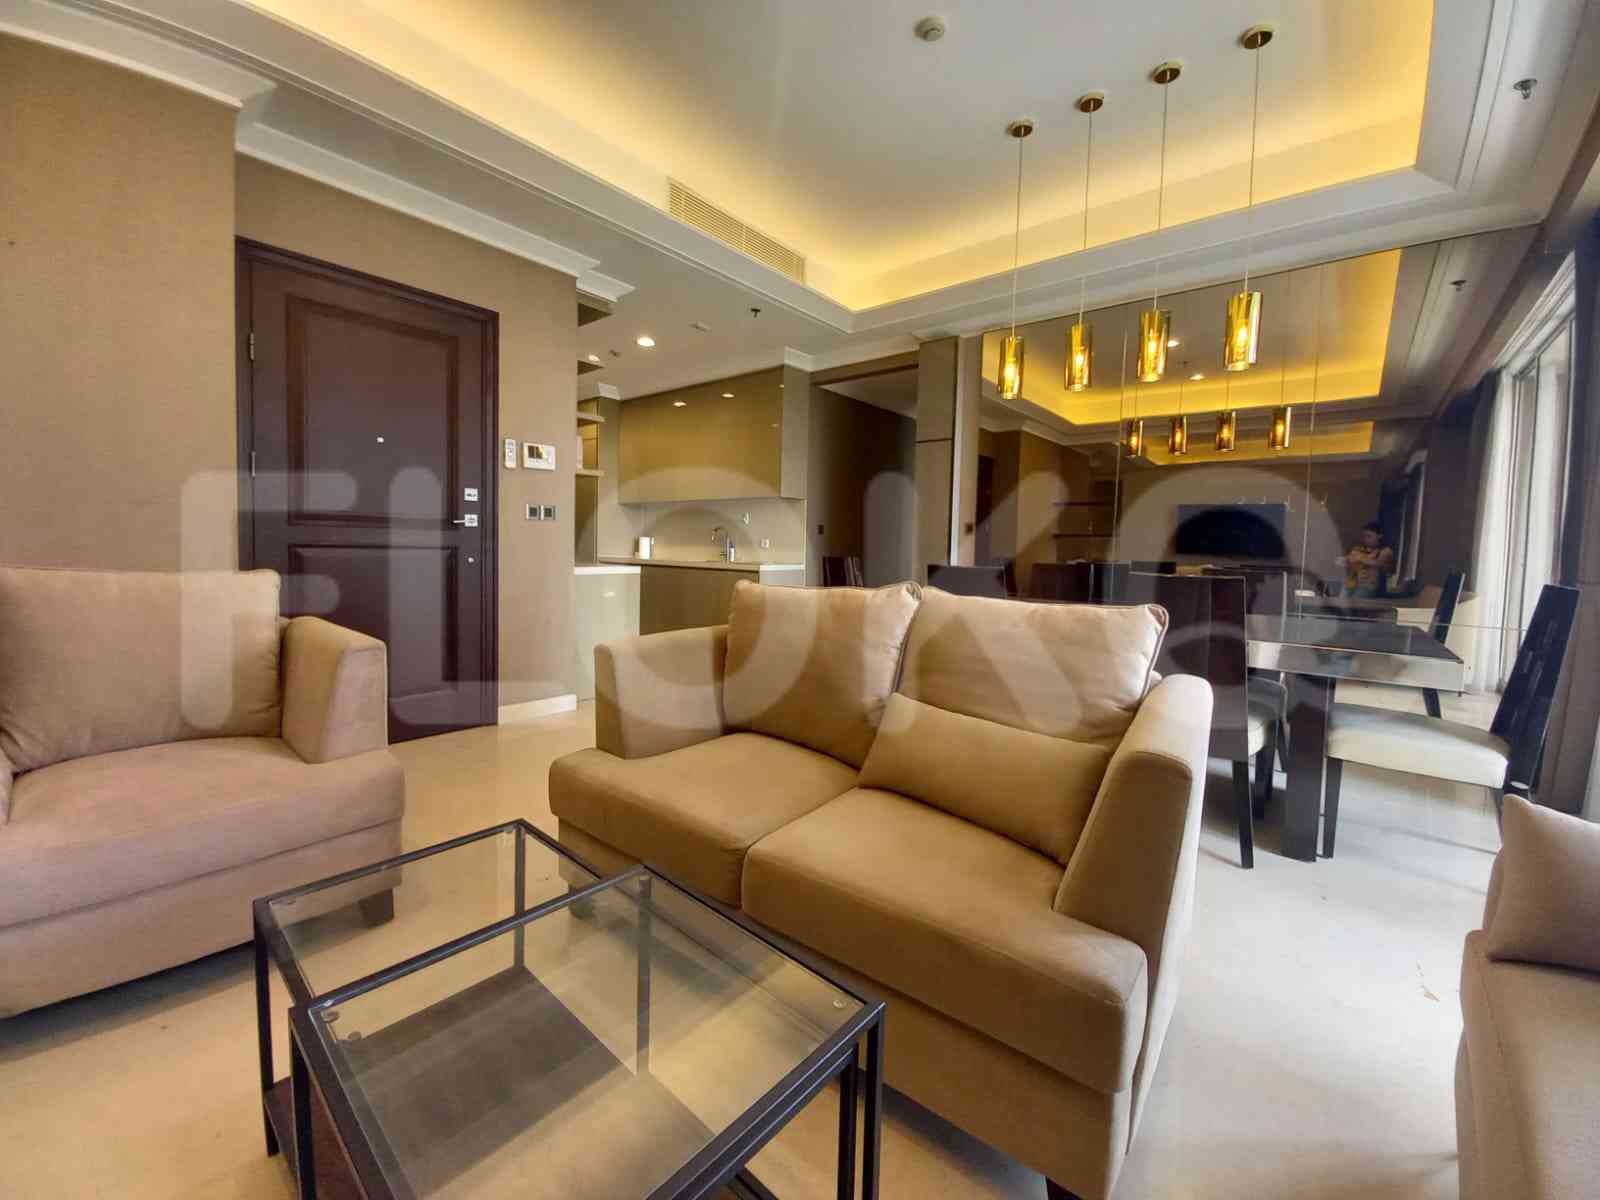 3 Bedroom on 8th Floor for Rent in Pondok Indah Residence - fpo70b 1